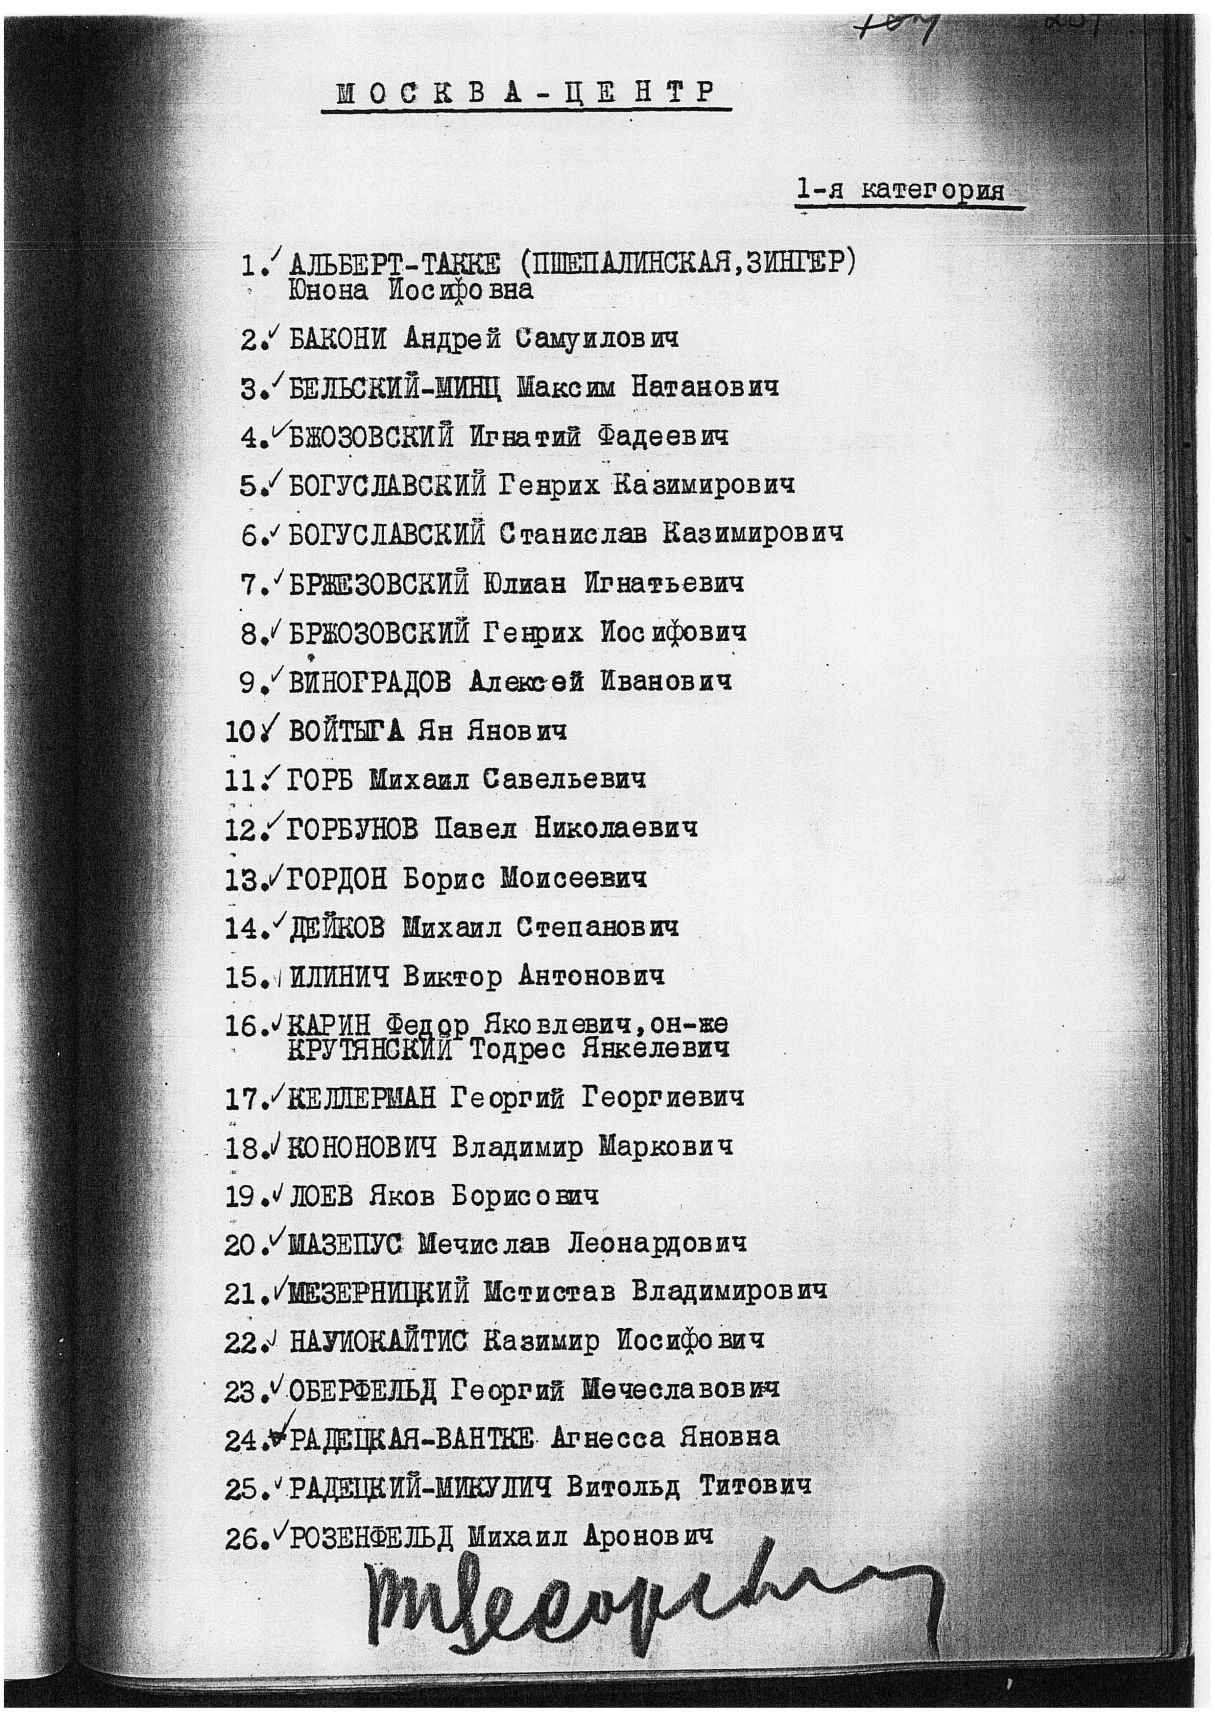 Сталинский расстрельный список в ОП от 20.8.1937 г.